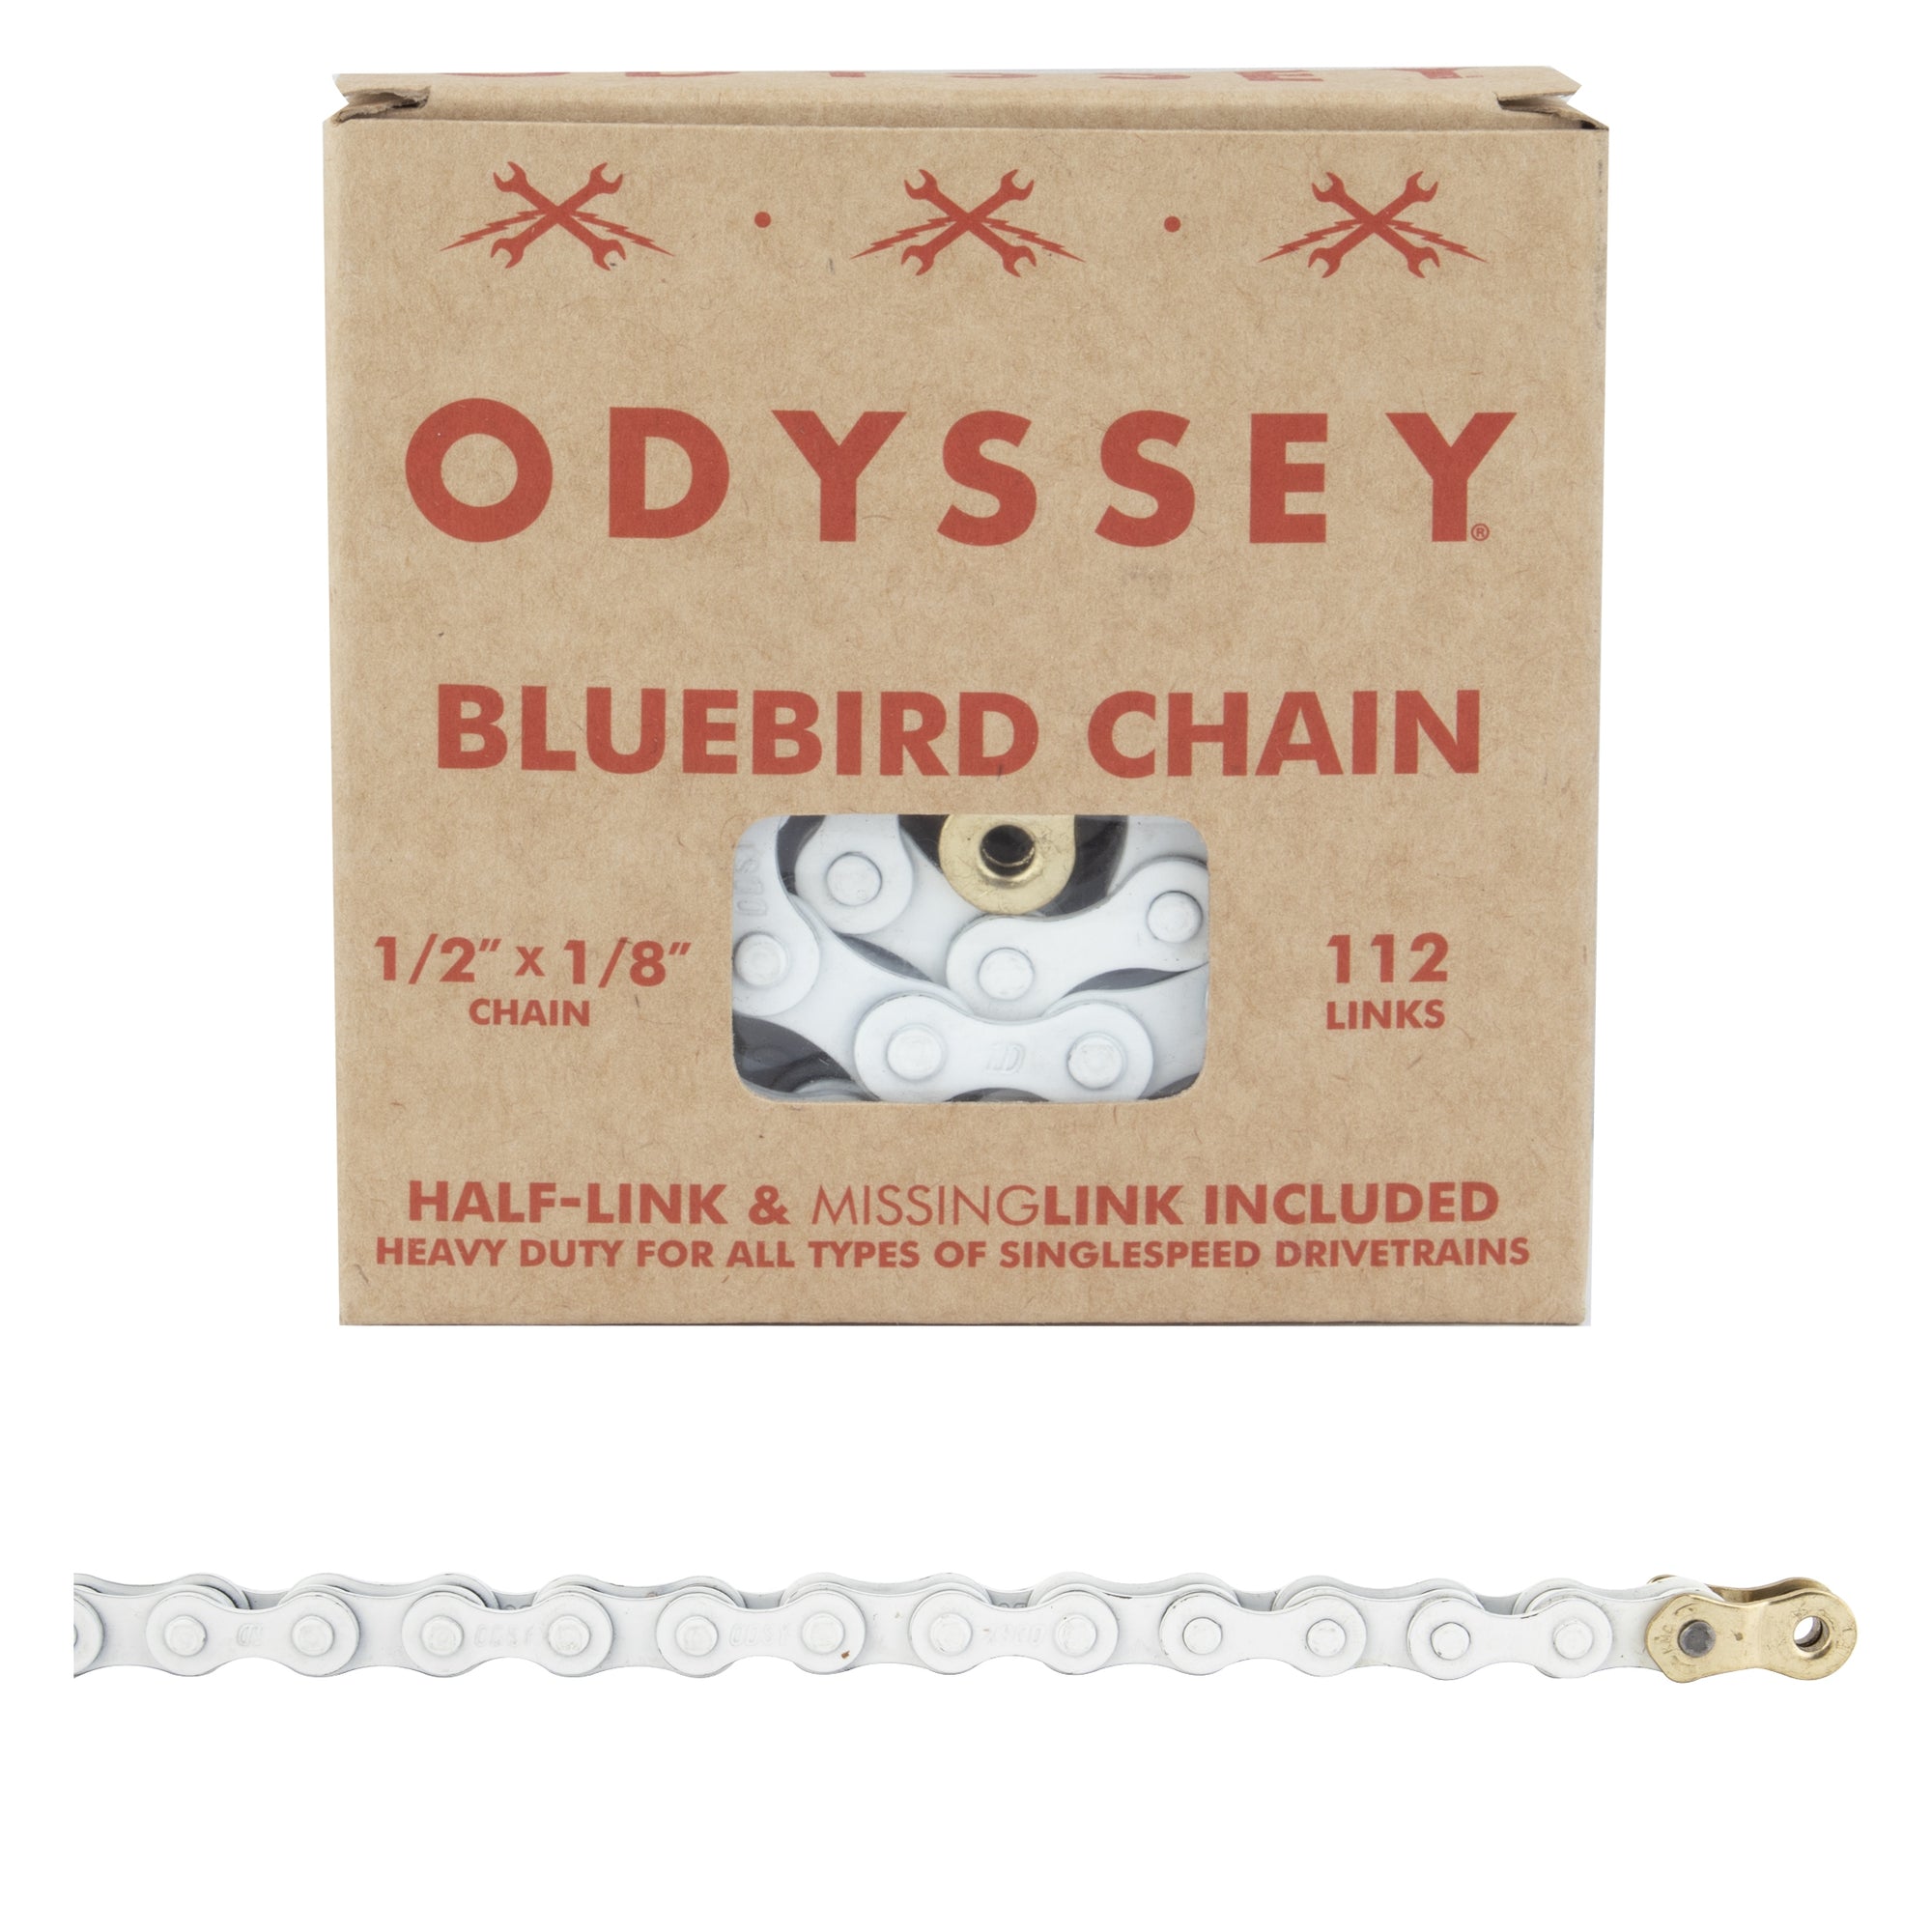 Odyssey Bluebird BMX Chain -  1/2x1/8x112L - White